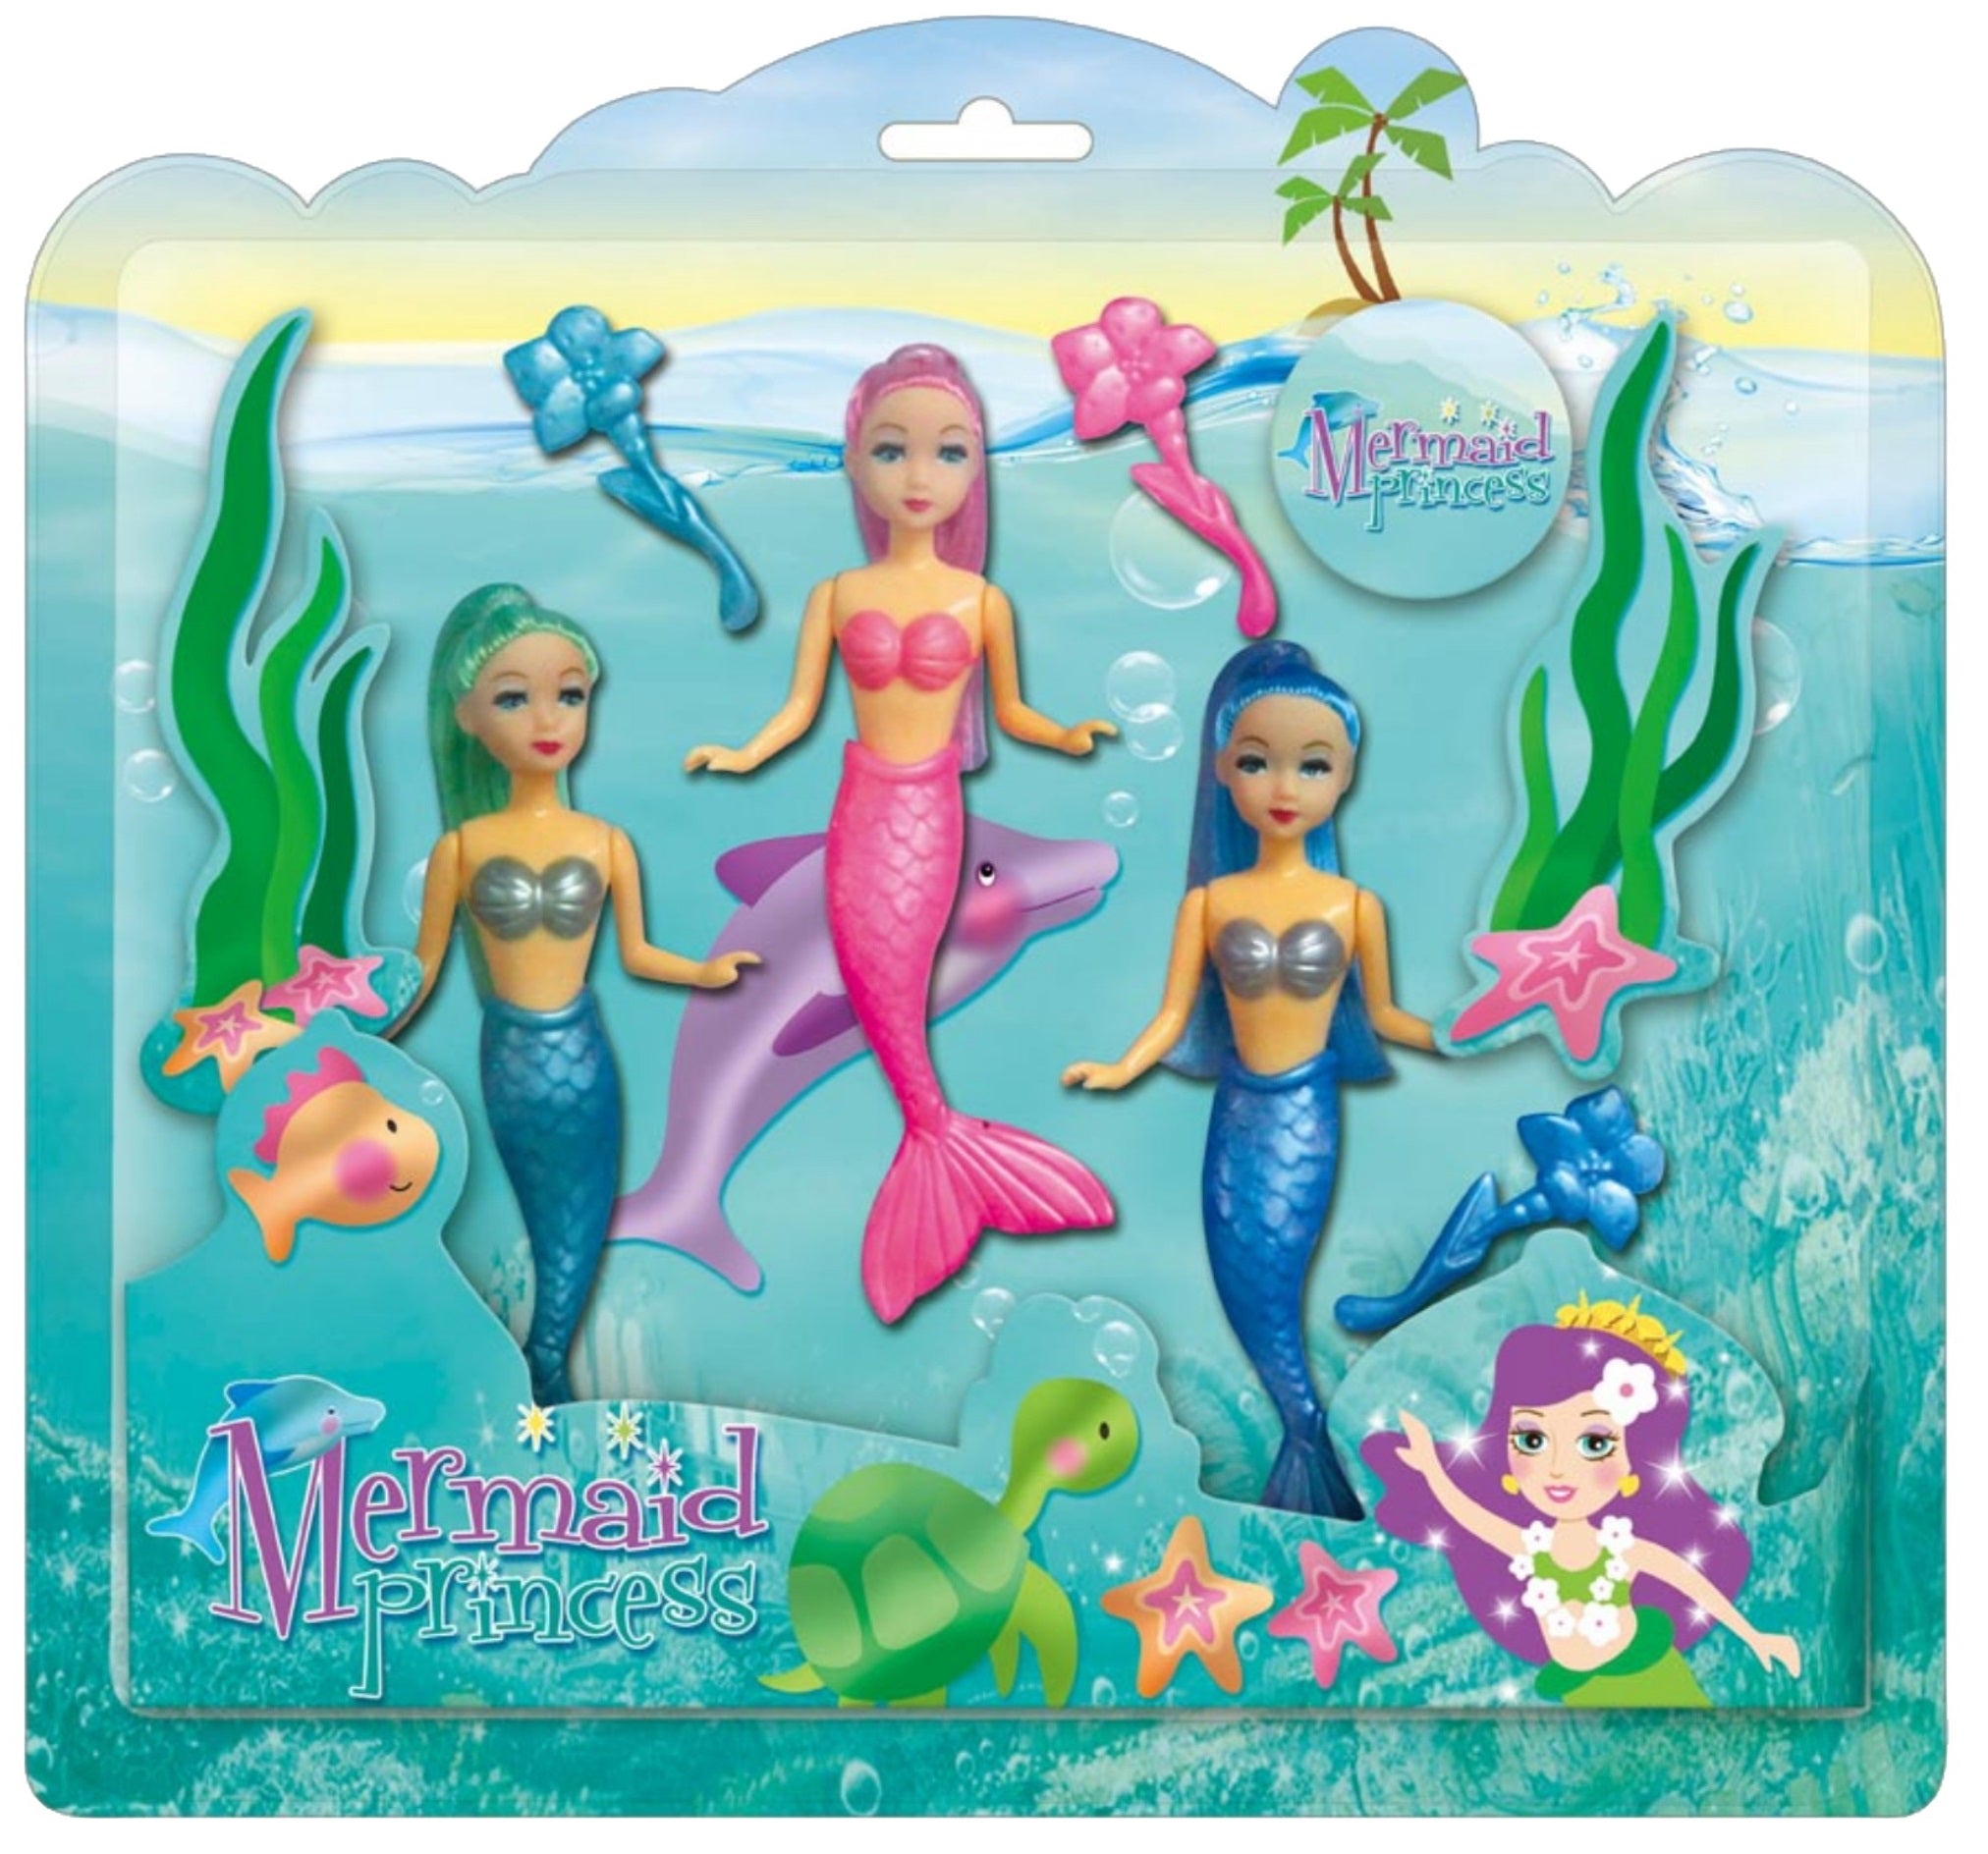 KandyToys 3 Piece Mermaid Princess Dolls Set